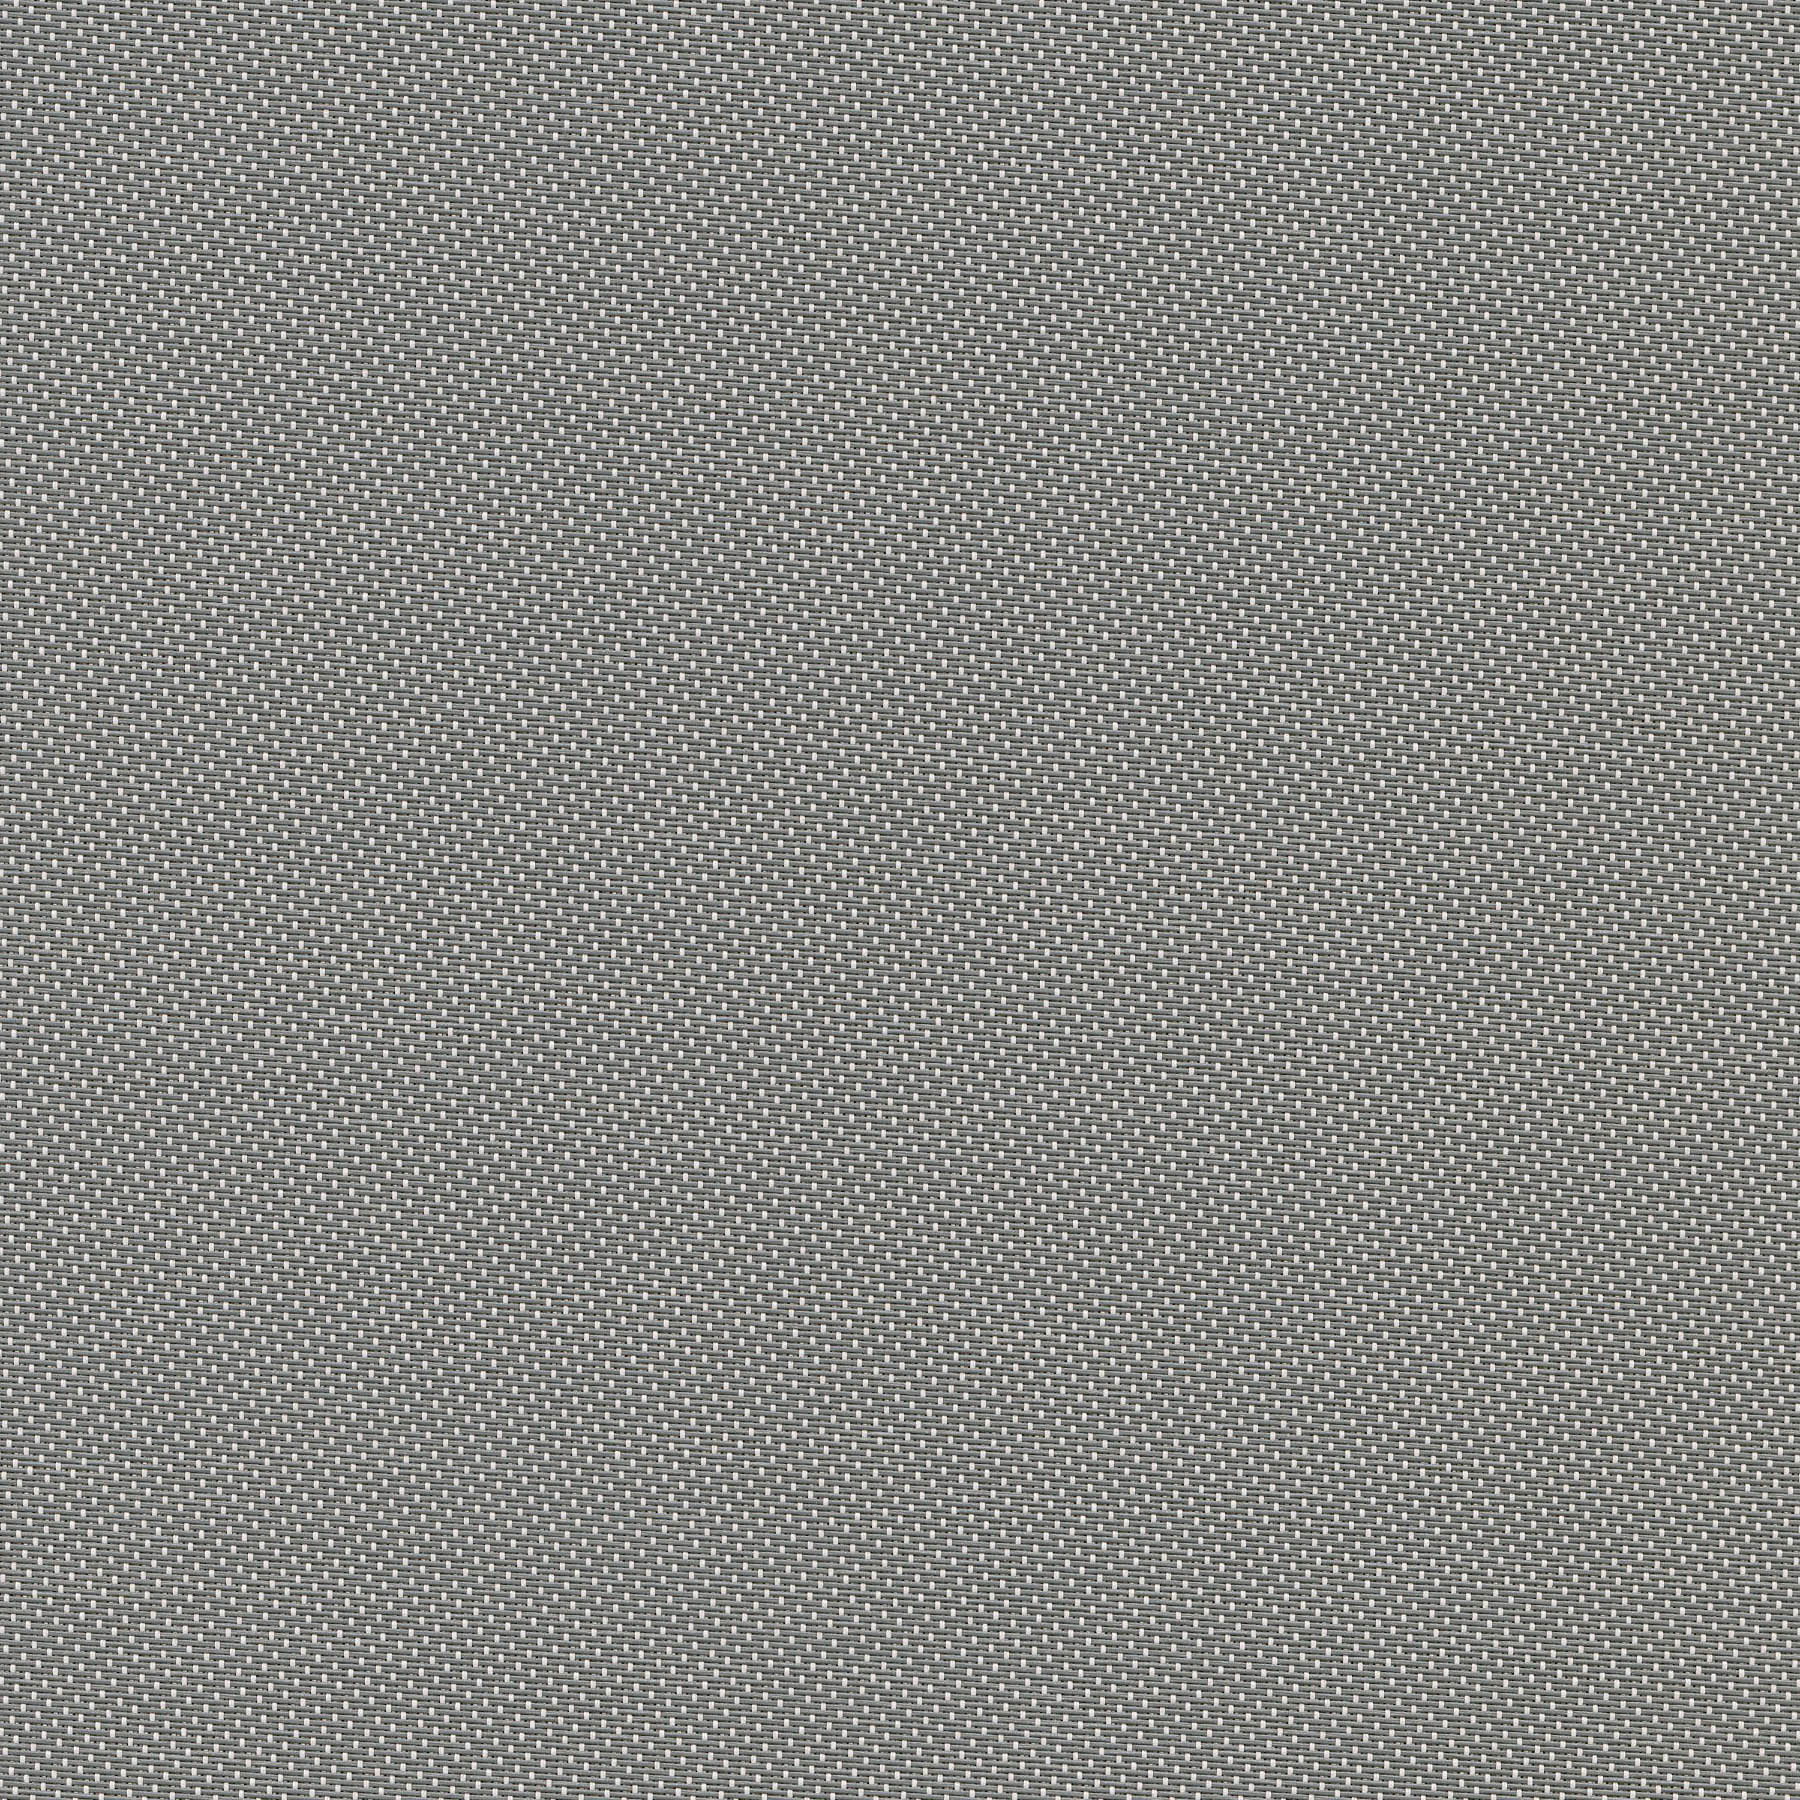 Altex - Fabric - SHEERWEAVE 2703 - Grey/White - 163